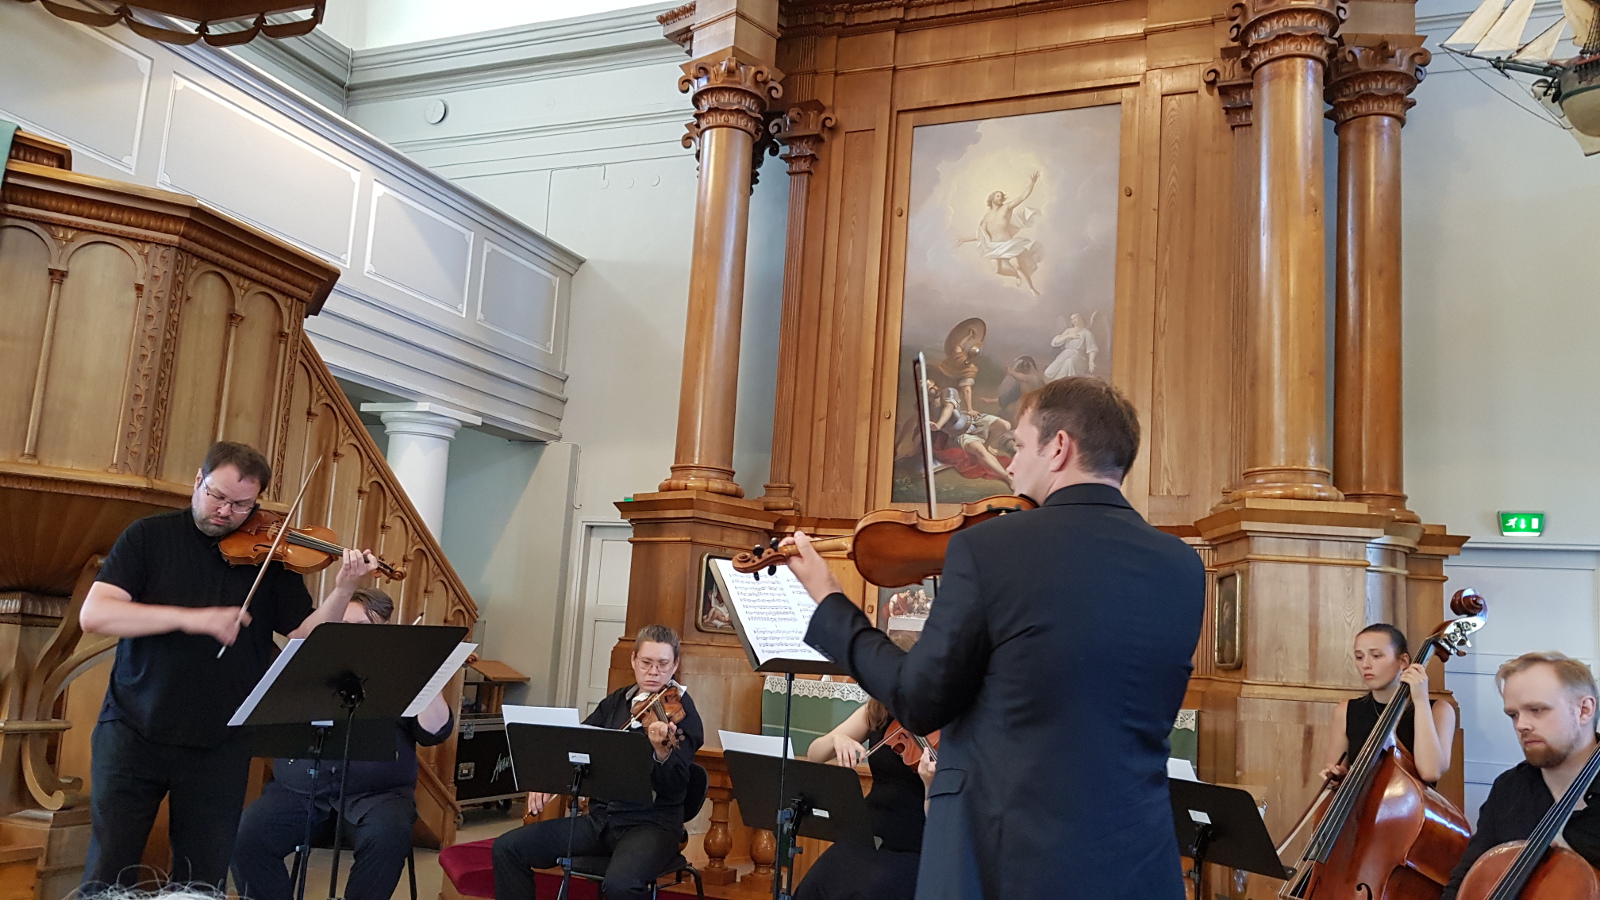 Kuvassa ovat Petteri Iivonen ja Jukka Merjanen selin soittamassa viulua ja taustalla viulistit ja basson sekä sellon soittajat.  Kaikilla on mustat esiintymisasut.